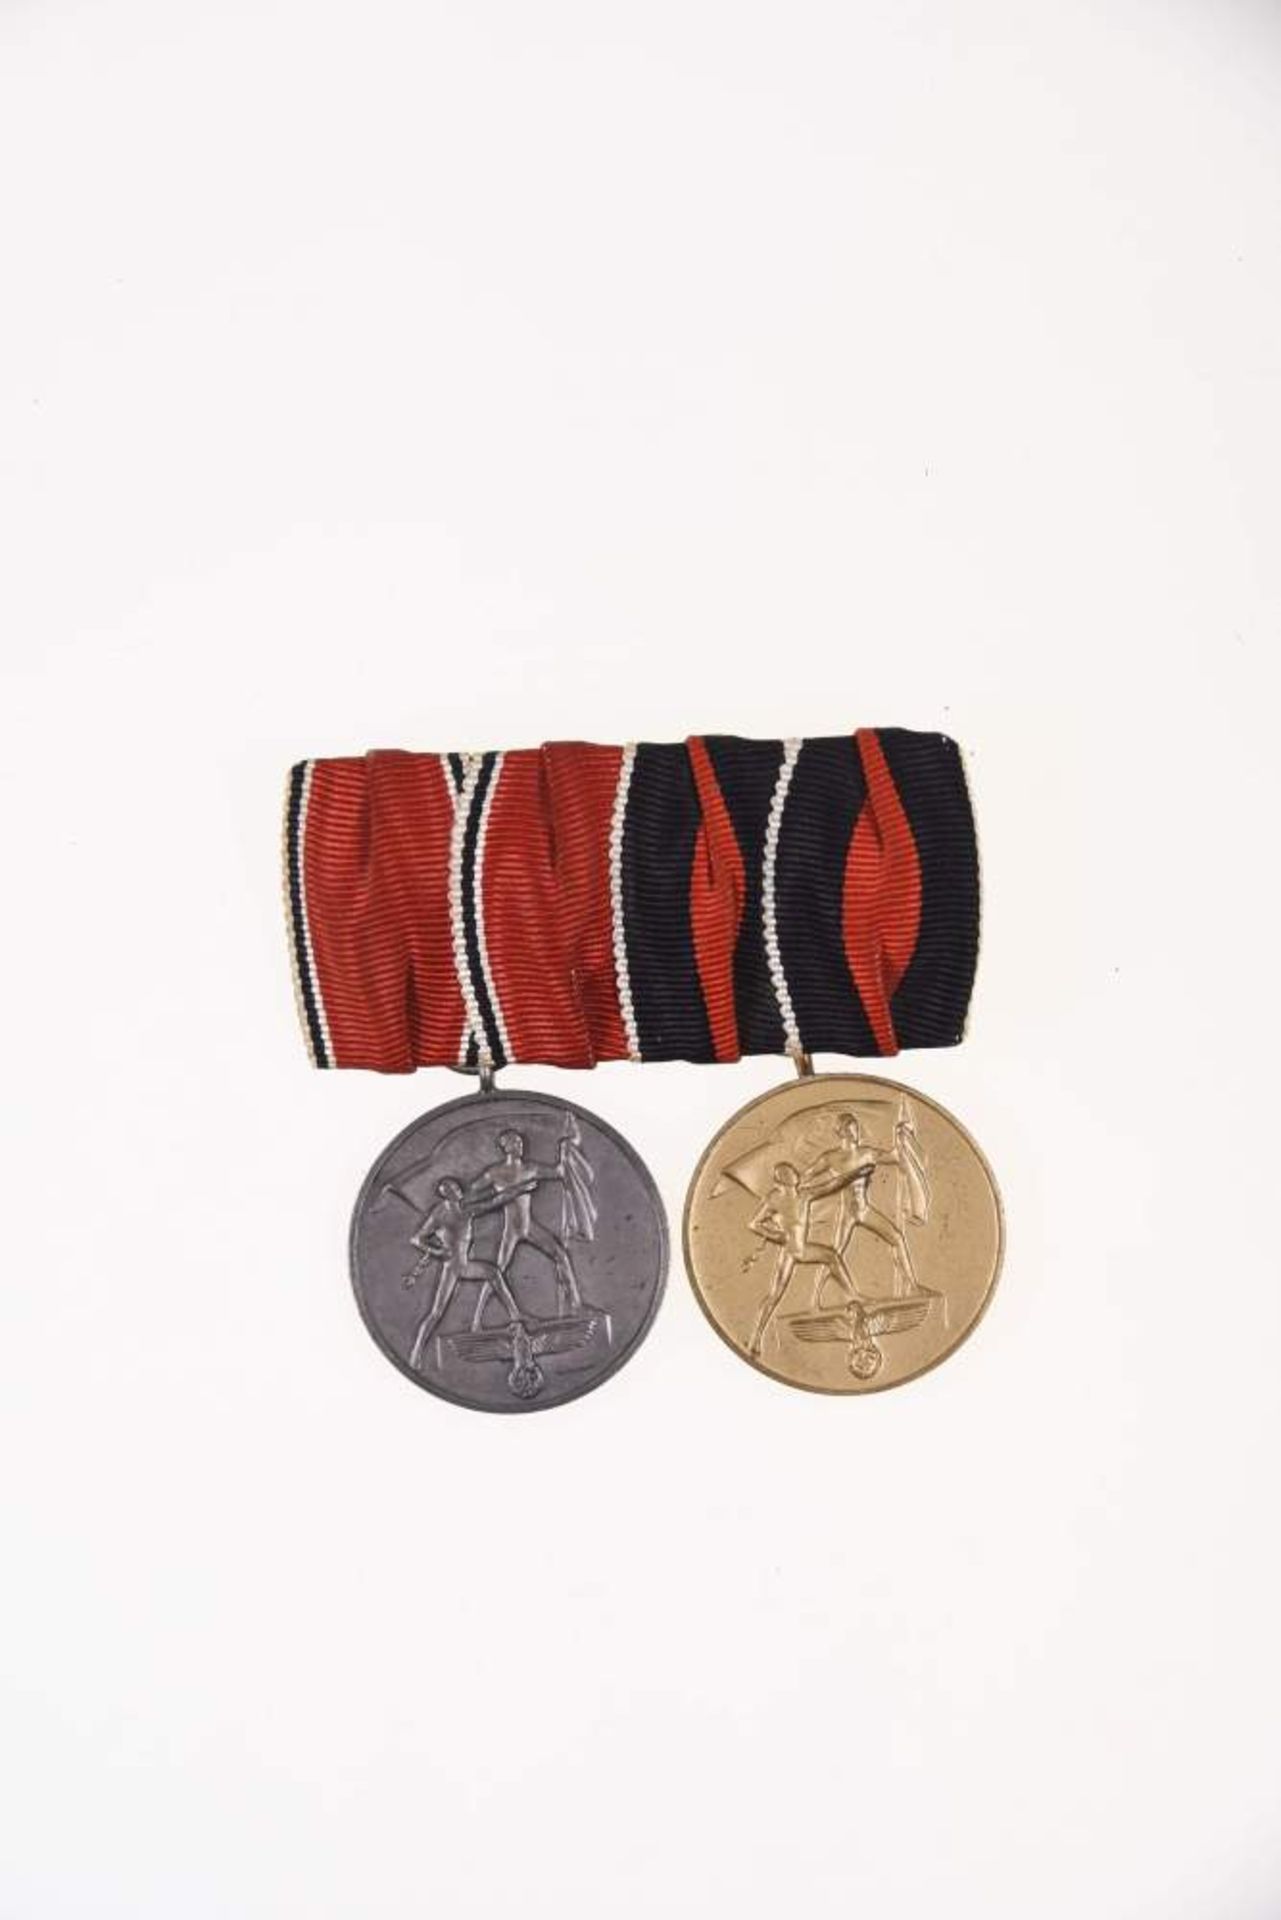 Bandspange mit Anschlussmedaillen, Österreich Medaille zur Erinnerung an den 13. März 1938 Bronze